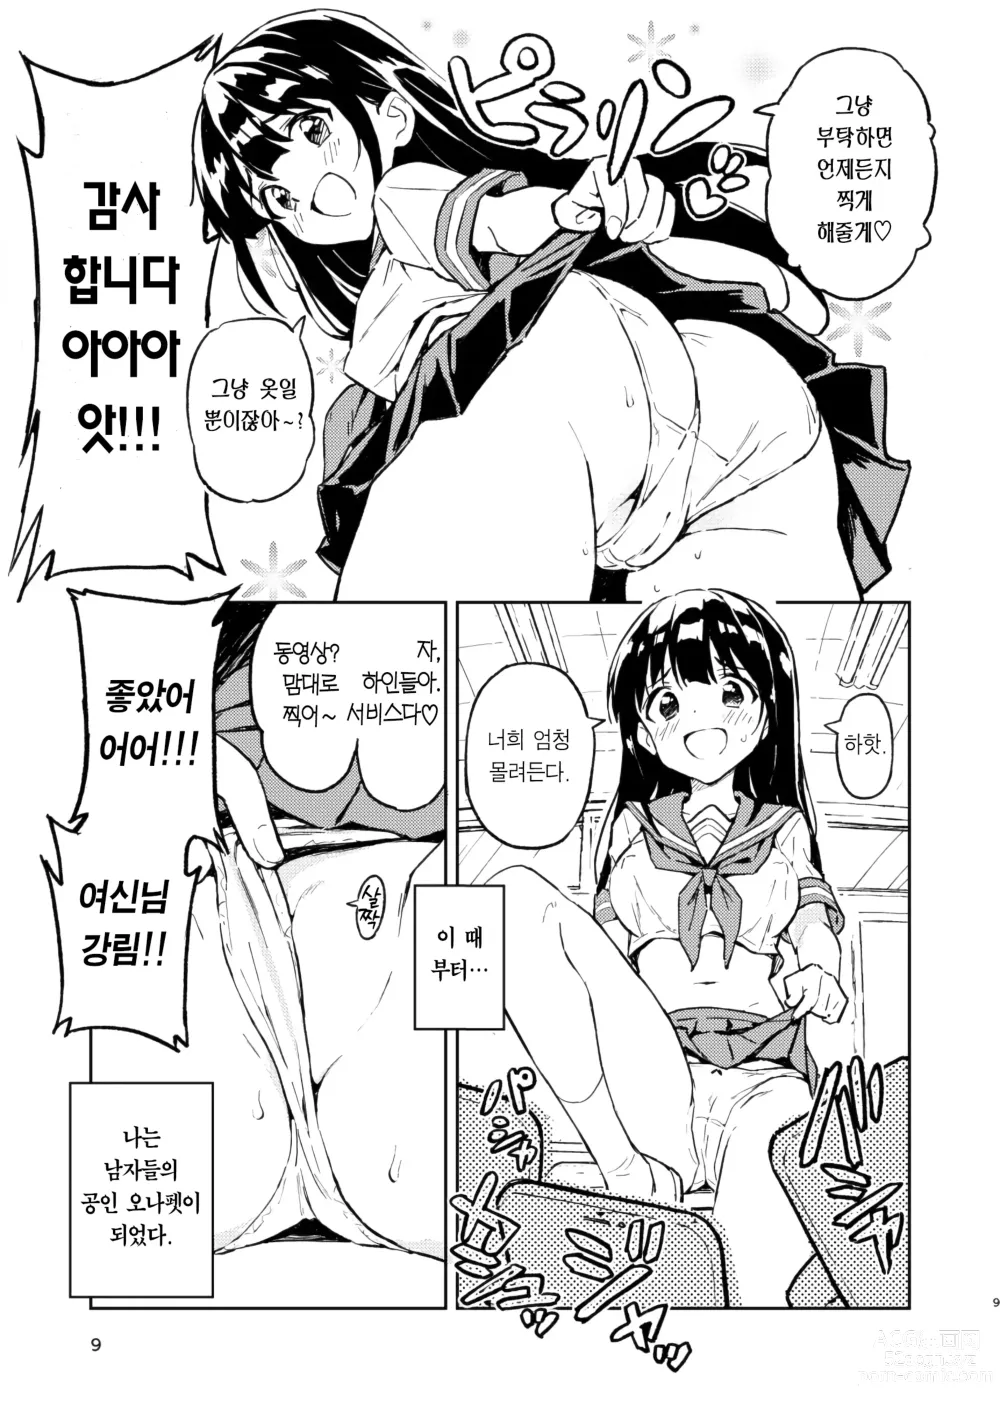 Page 9 of doujinshi 한 달 안에 임신 못하면 남자로 돌아가는 이야기